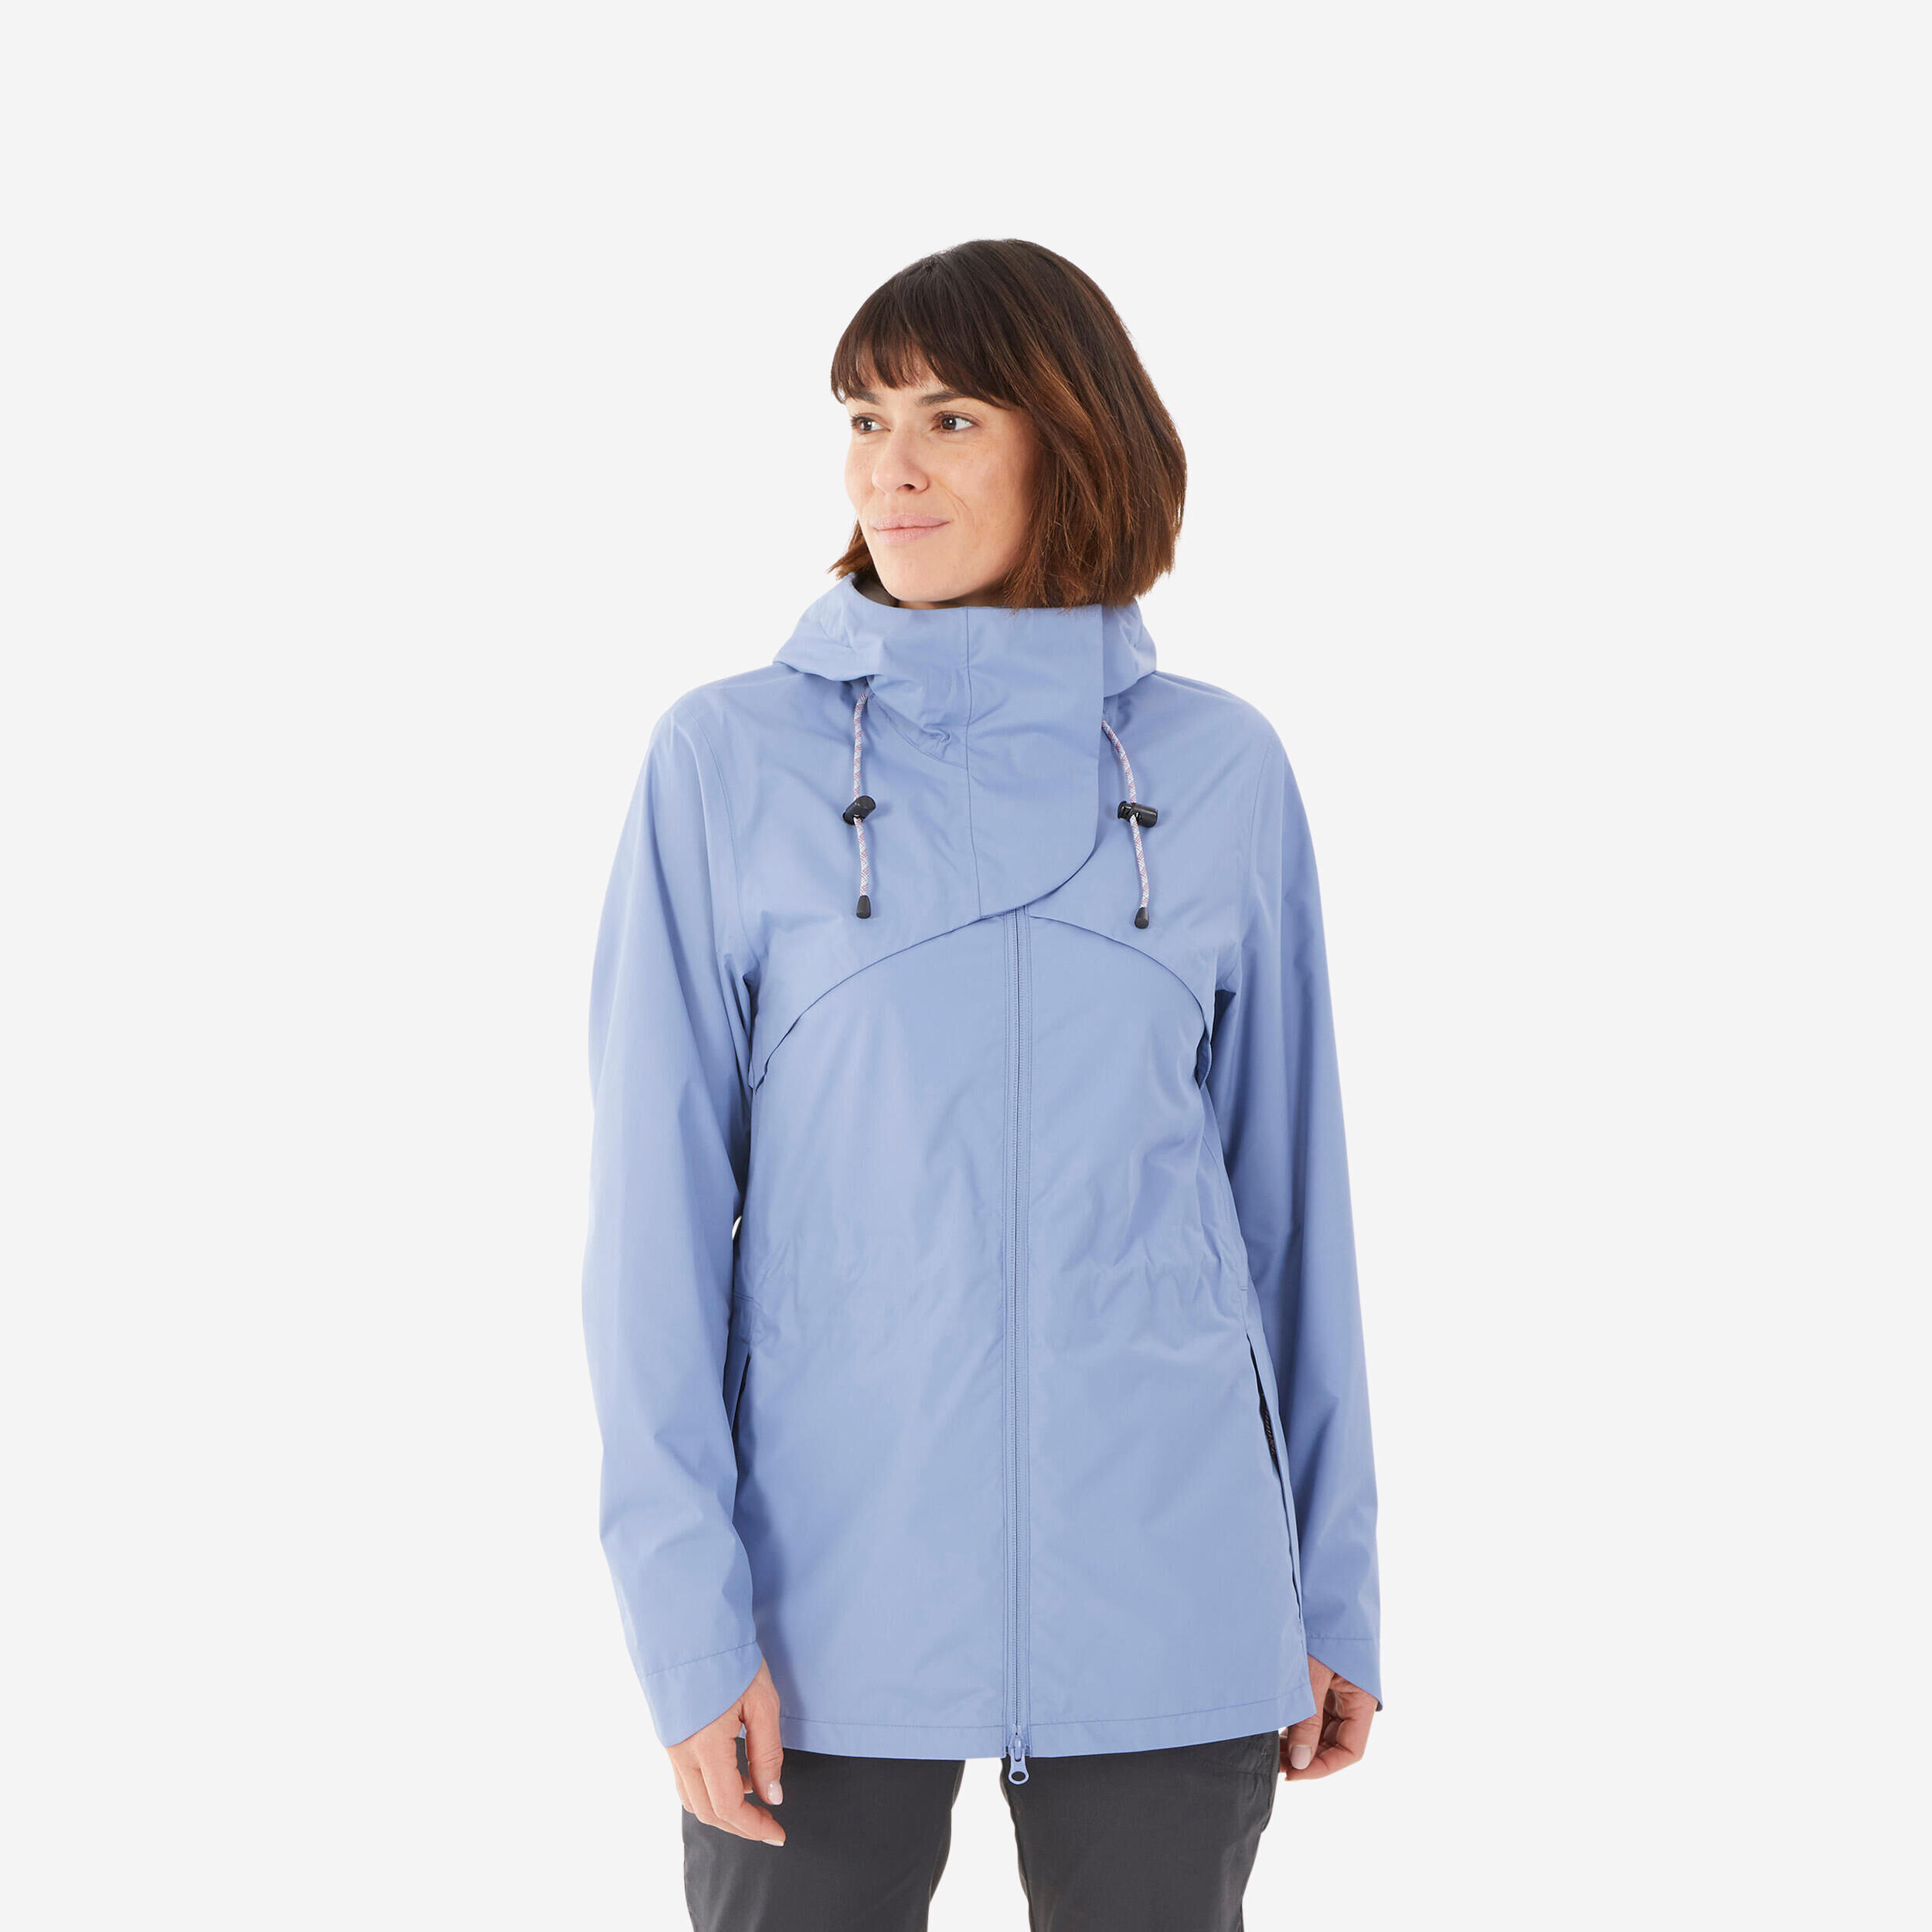 QUECHUA Hiking Raincoat - NH500 Waterproof Jacket - Women - Blue